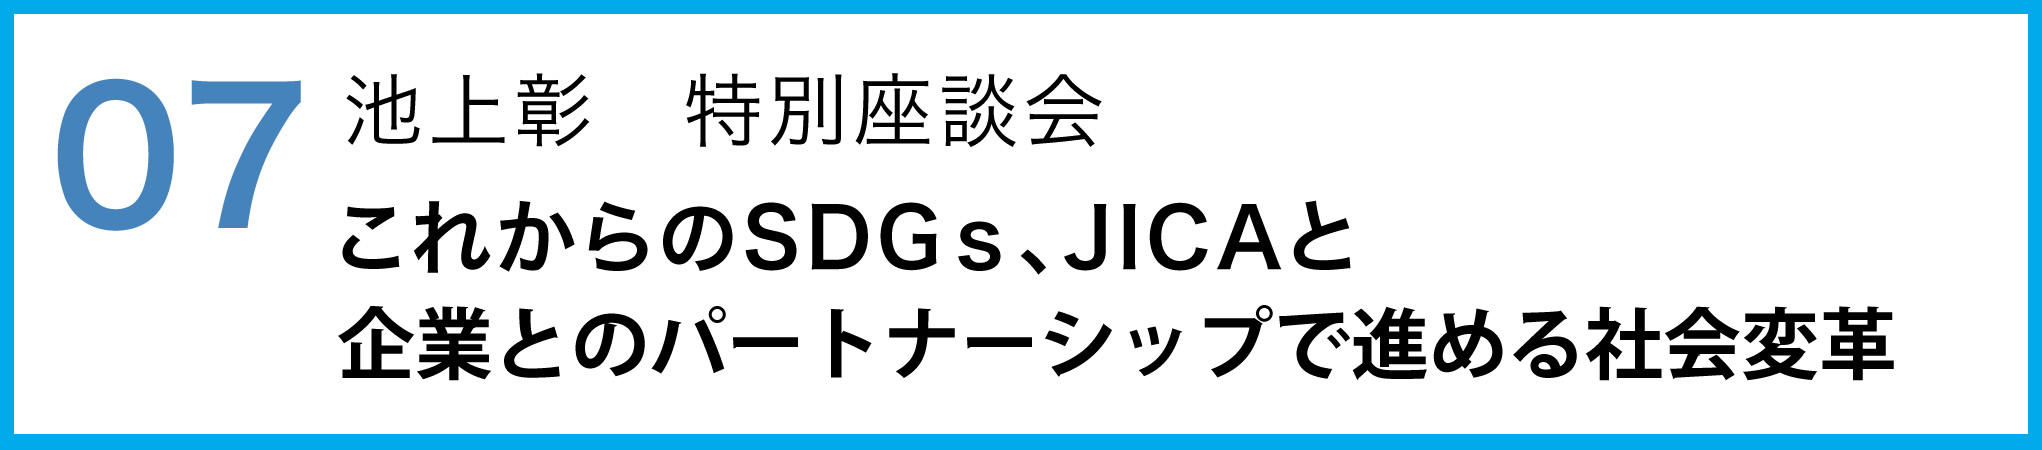 07 池上彰　特別座談会　これからのSDGs、JICAと企業とのパートナーシップで進める社会変革